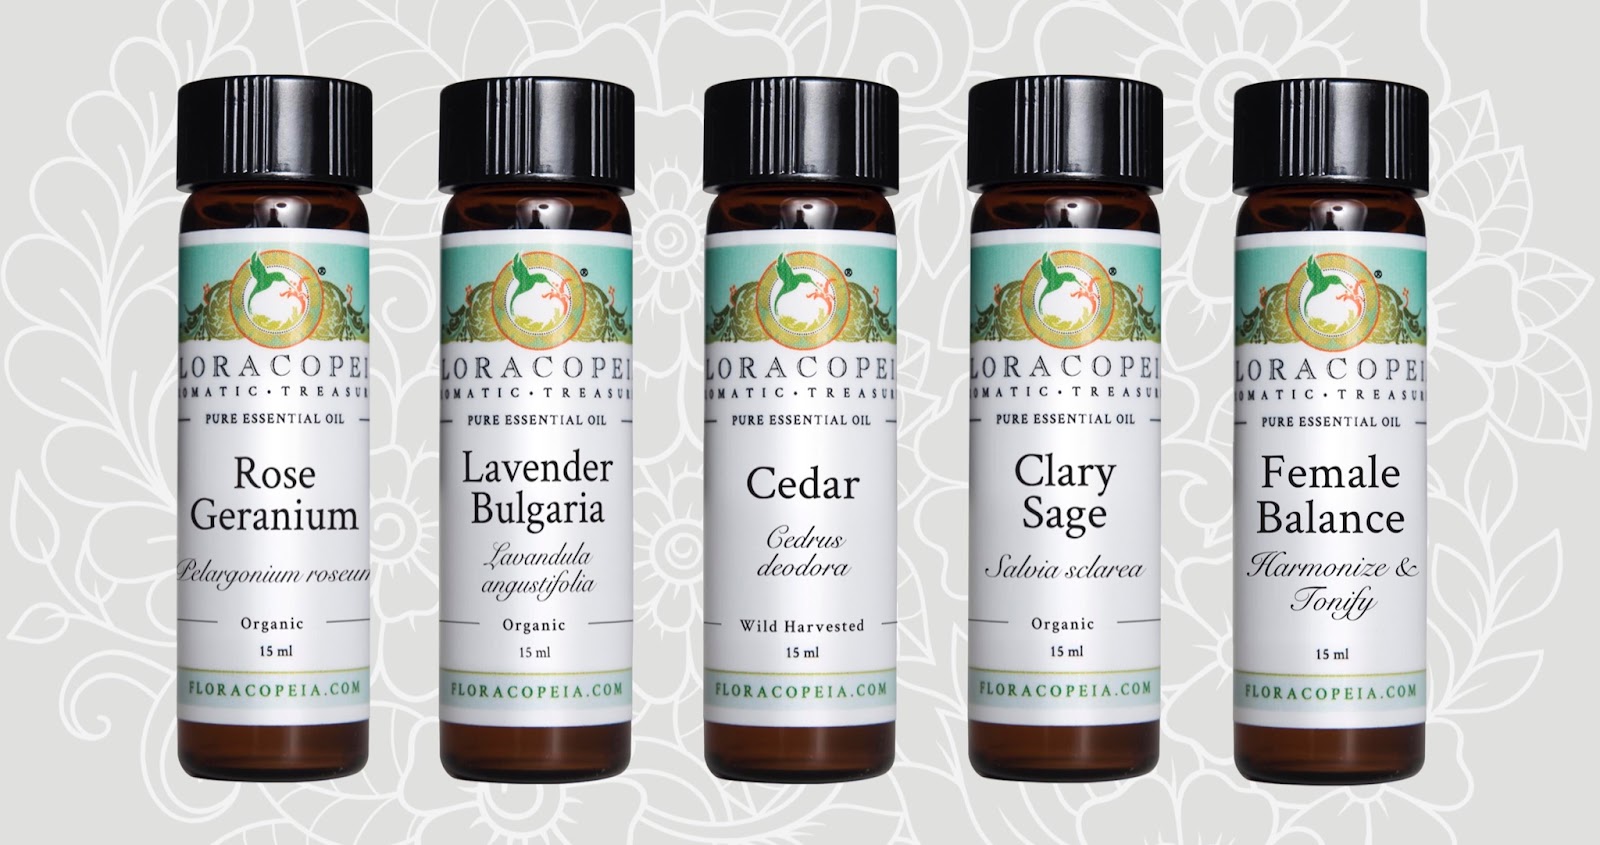 Essential oils line up with Rose Geranium, lavender Bulgaria, Cedar, Clary Sage, and Female Balance